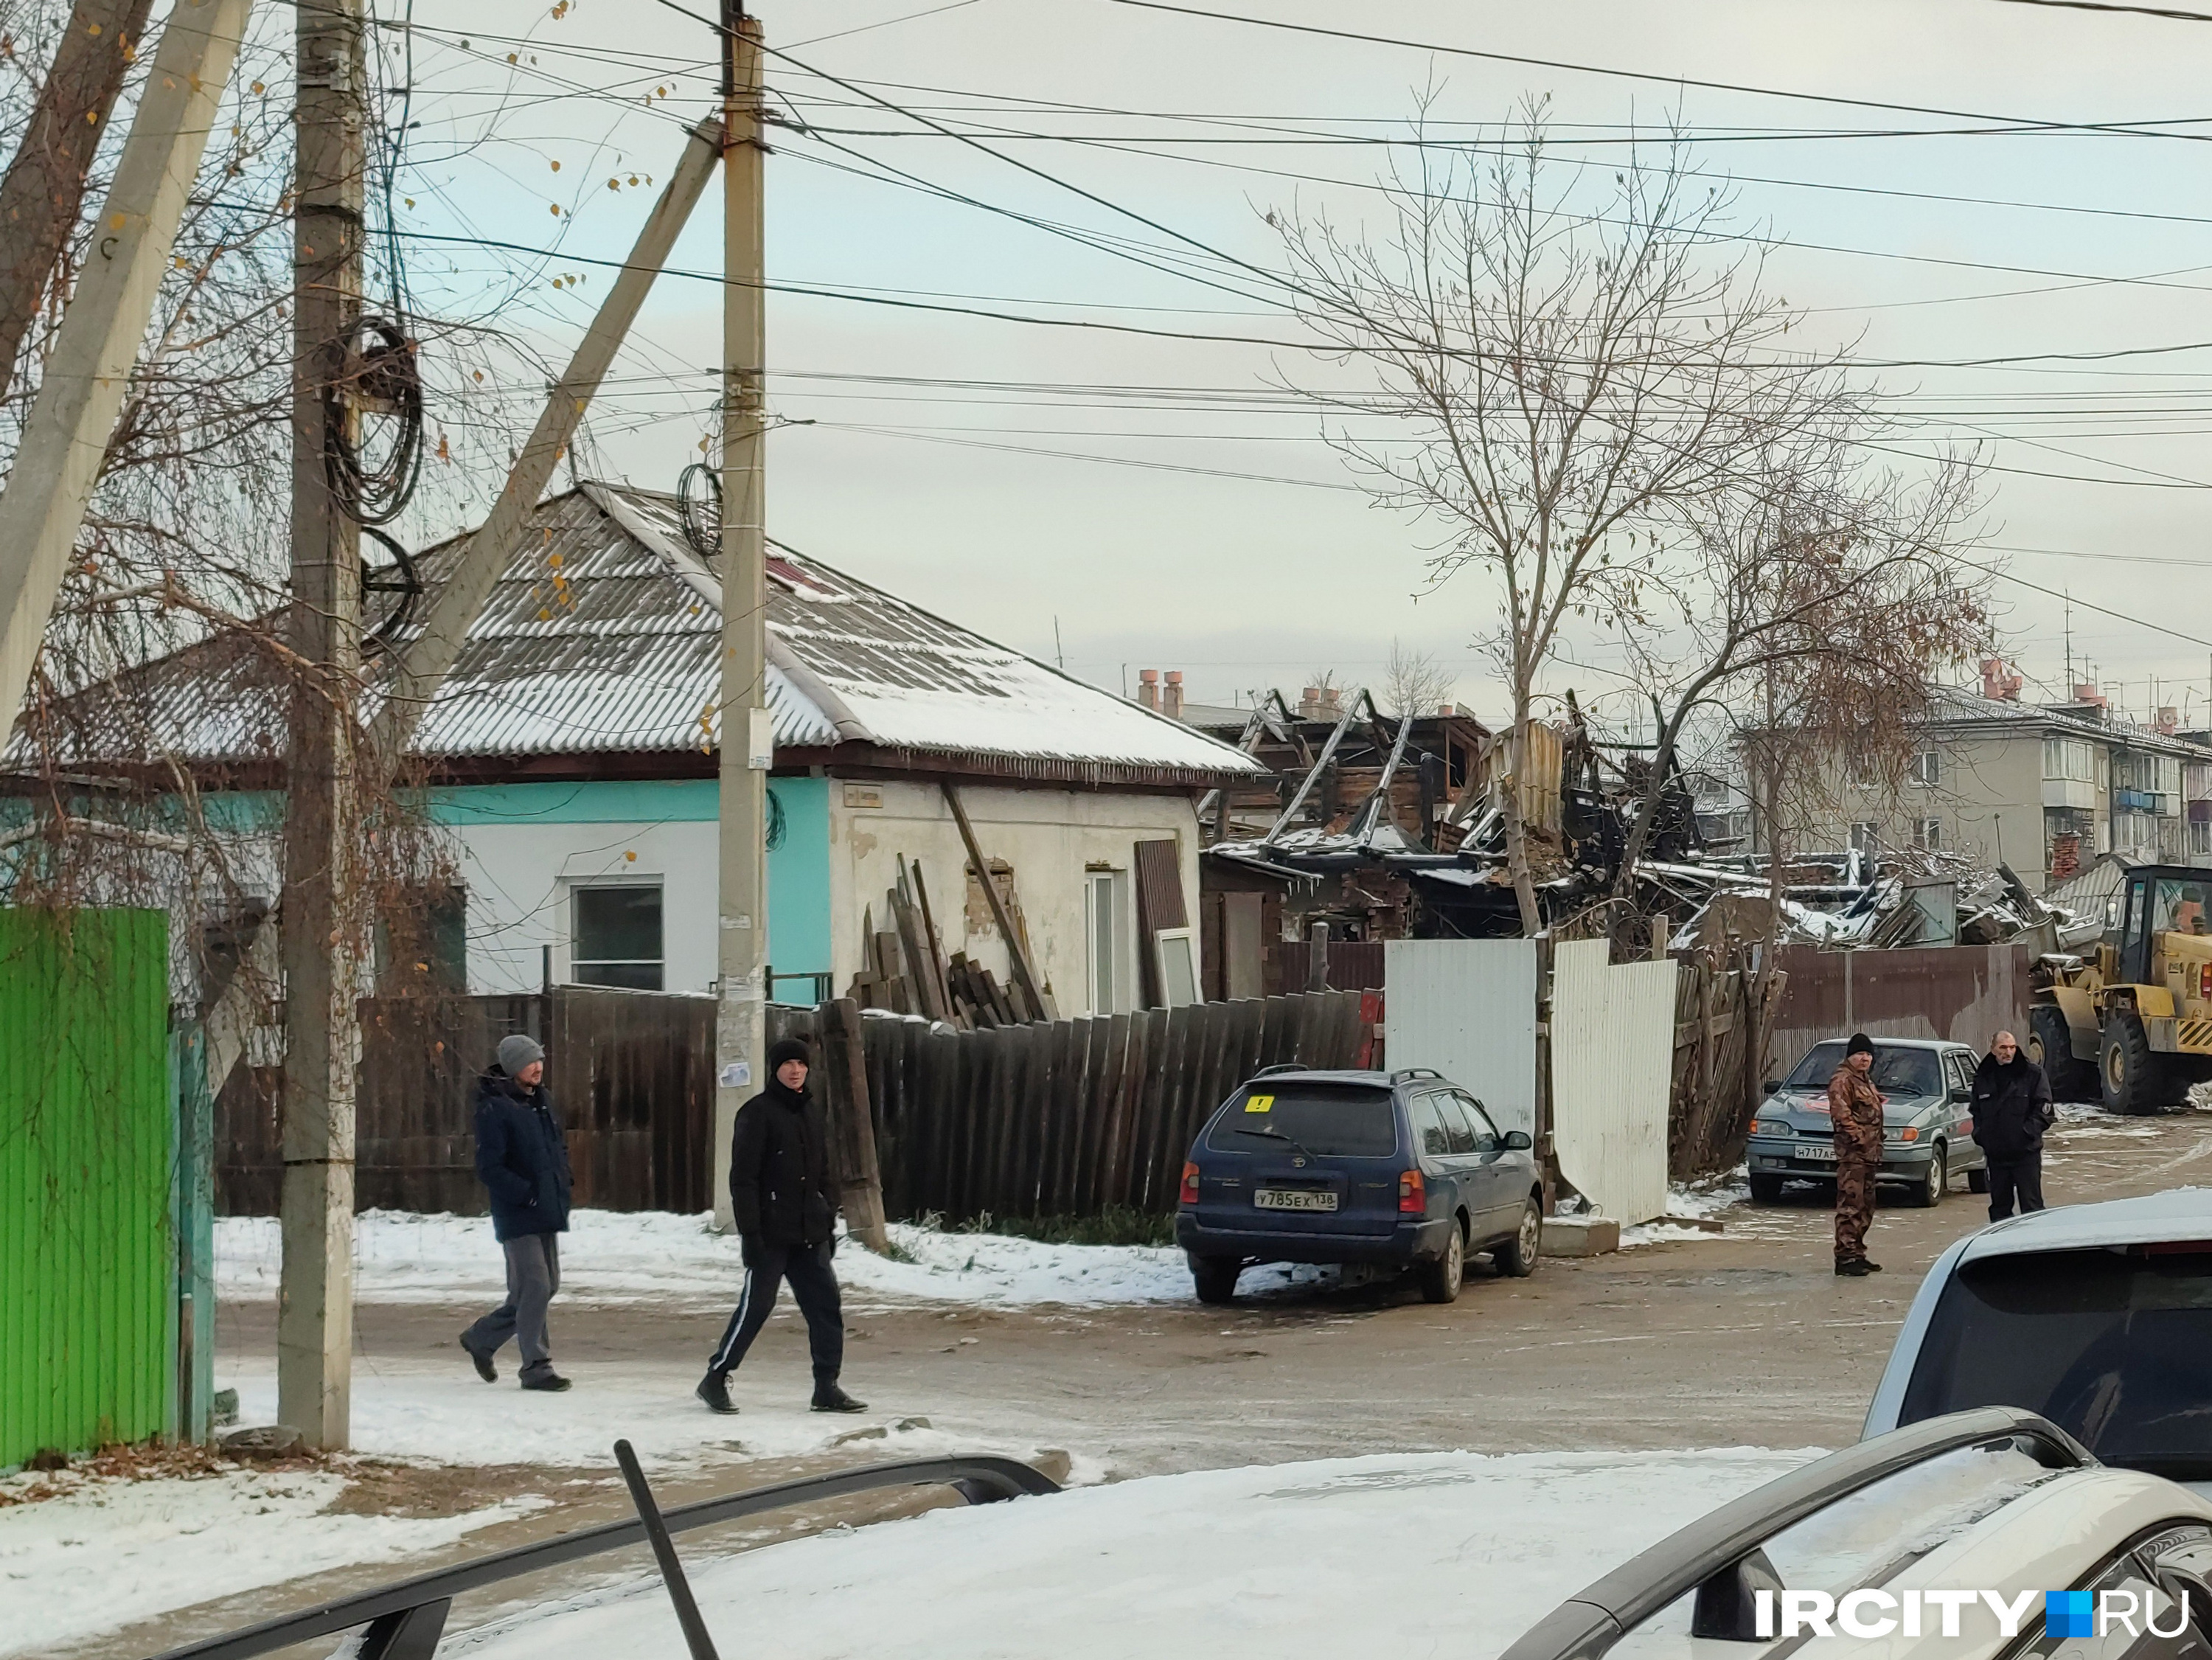 Дом на углу улицы Павла Красильникова и 2-го Советского переулка (слева) пострадал — после падения самолета по стене пошла трещина